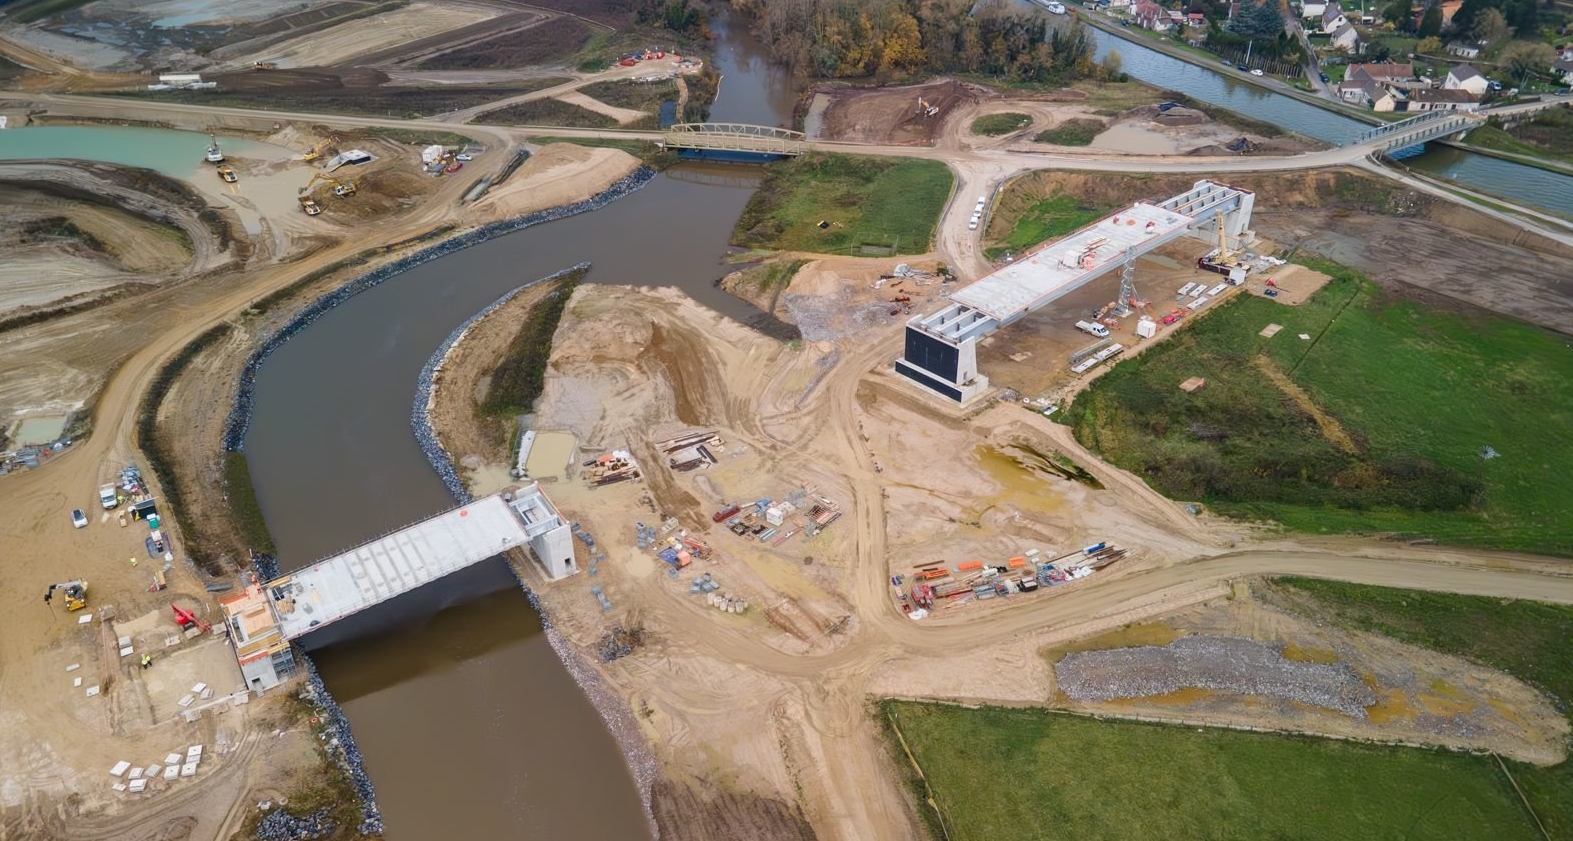 Le canal Seine-Nord est devenu une réalité très concrète : un chantier colossal qui vient modifier considérablement le paysage au sein duquel il trace sa route. Société du canal Seine Nord